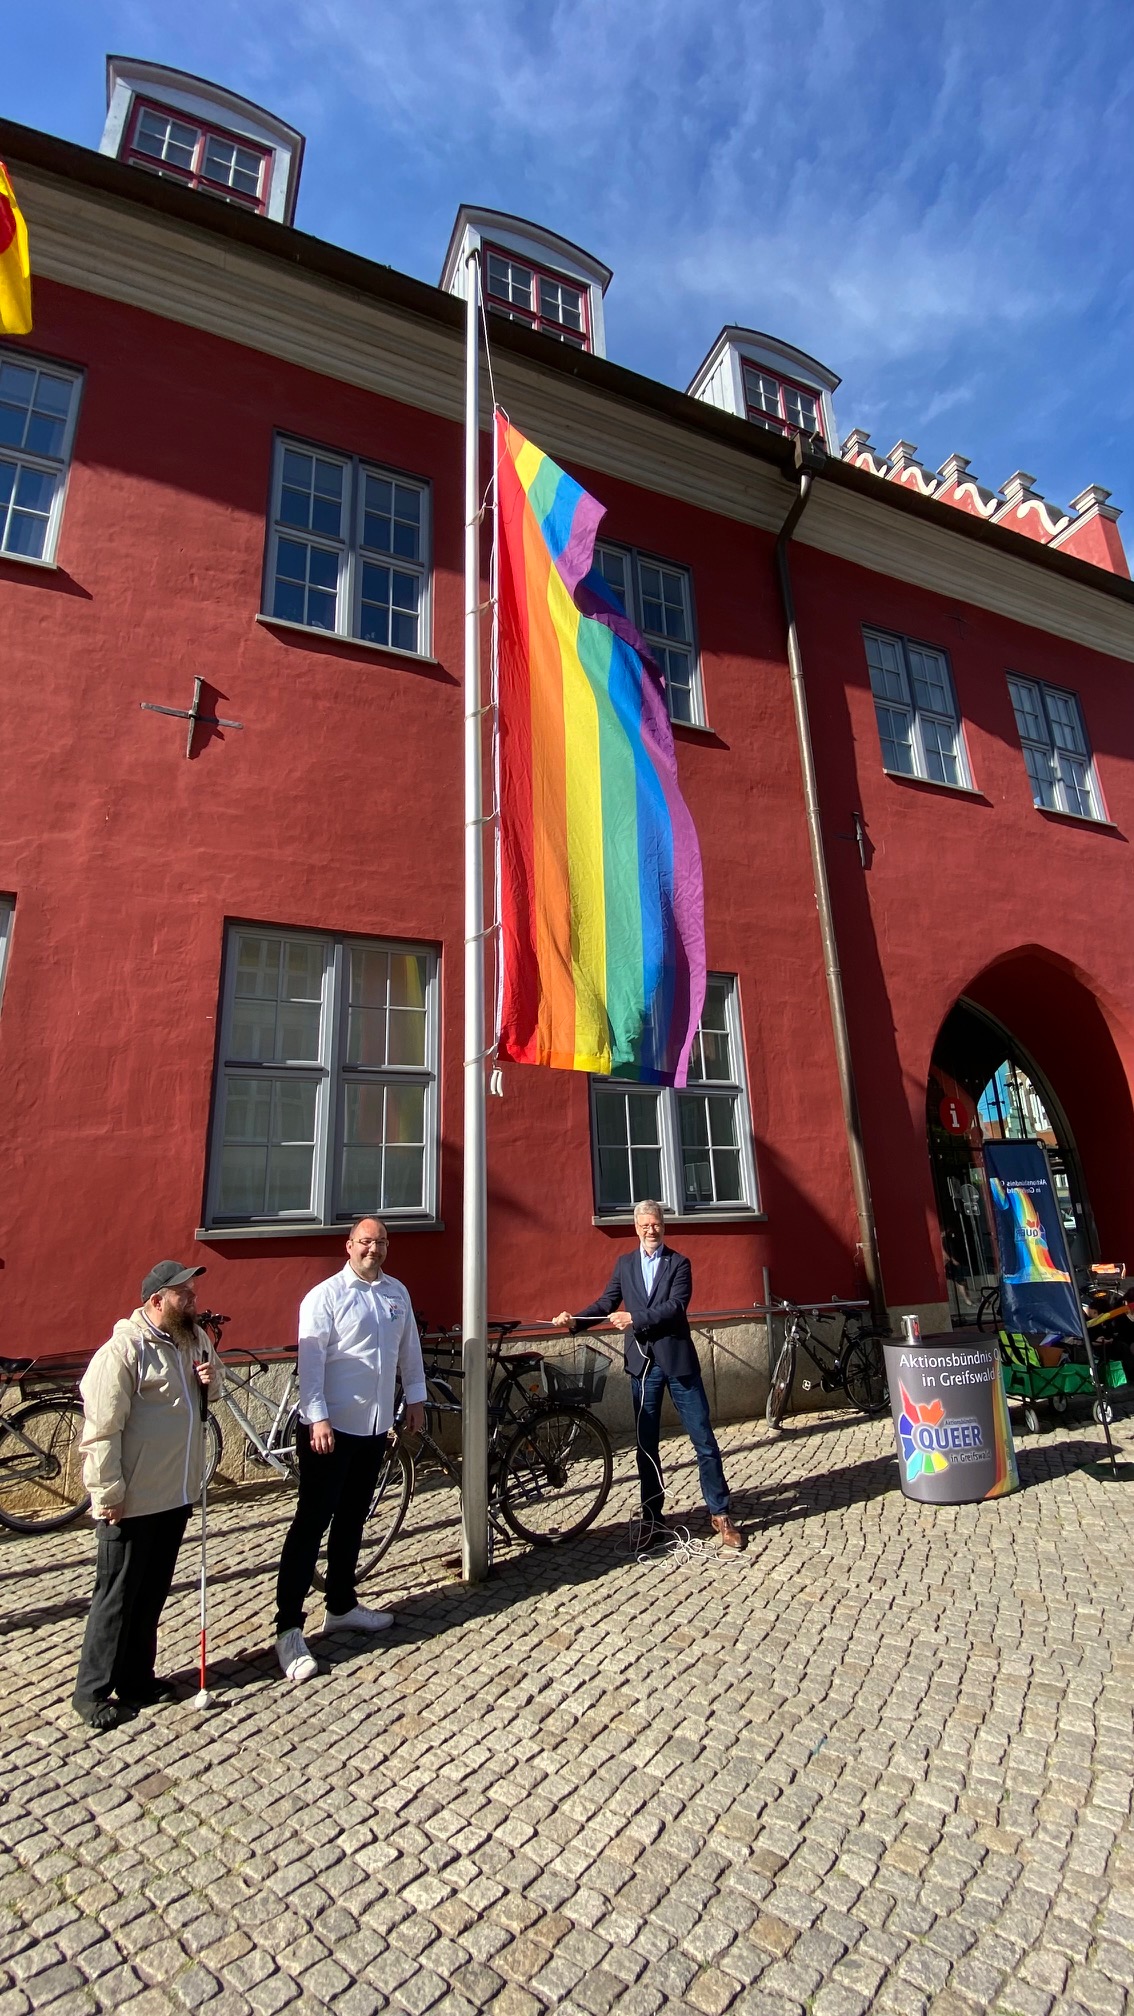 /export/sites/hgw/de/.galleries/Pressestelle-Pressemitteilungen/Pressemitteilungen-2022/Dr.-Fassbinder-und-Mitglieder-von-Queer-hissen-die-Regenbogenflagge-vor-dem-Rathaus-Foto-Presesstelle.jpg